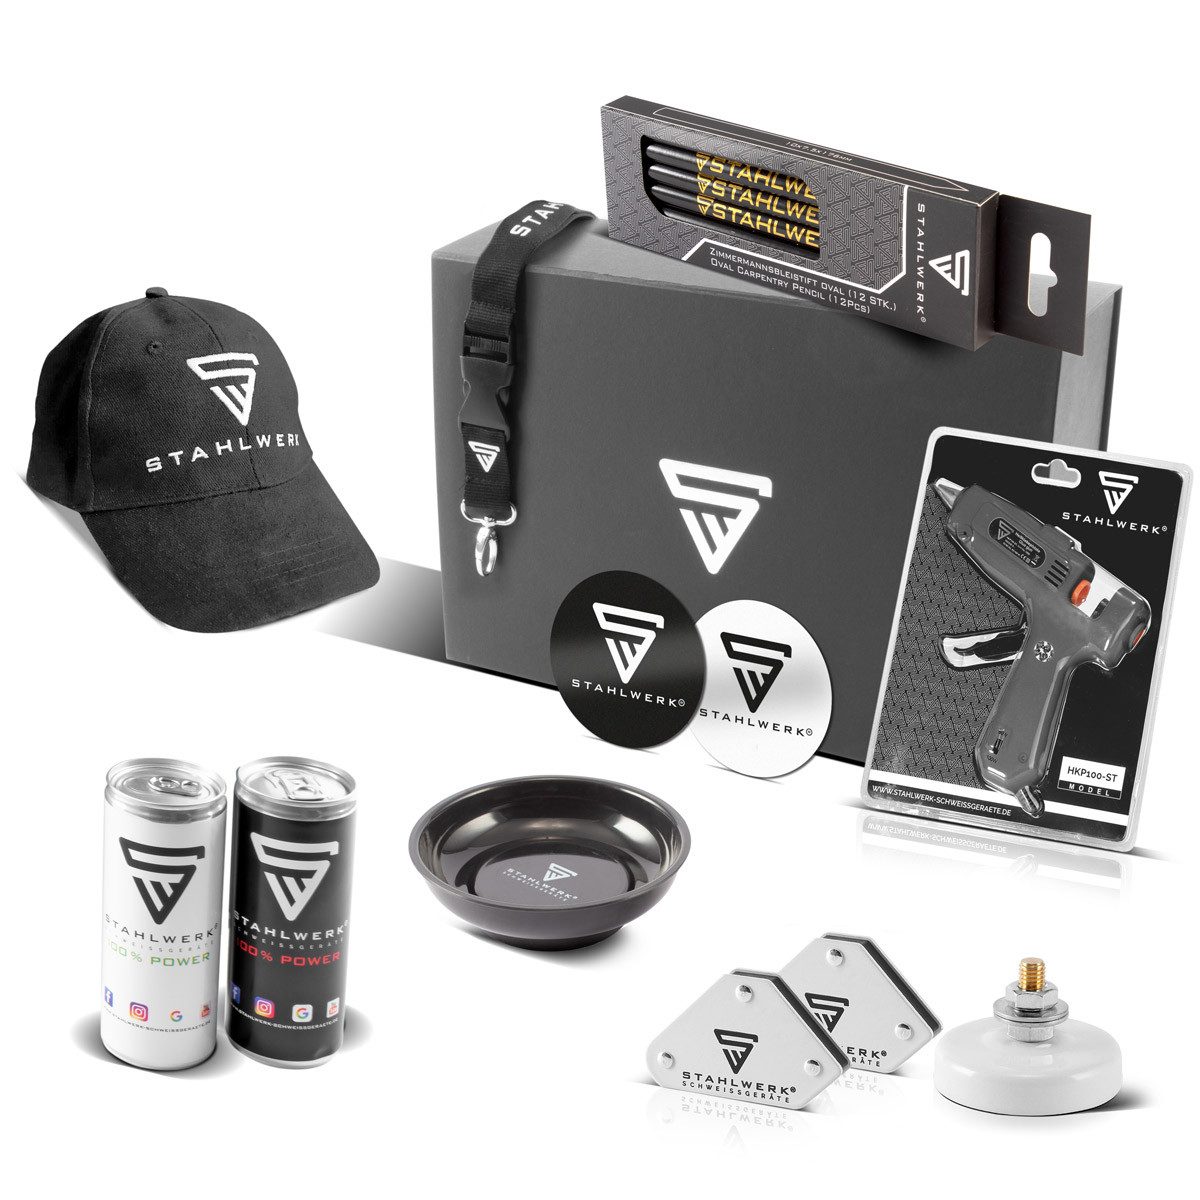 STAHLWERK Werkzeugset Merchandise Fan Paket, (Packung), Ideale Geschenkidee für alle STAHLWERK Fans - Umfangreiches Promopaket